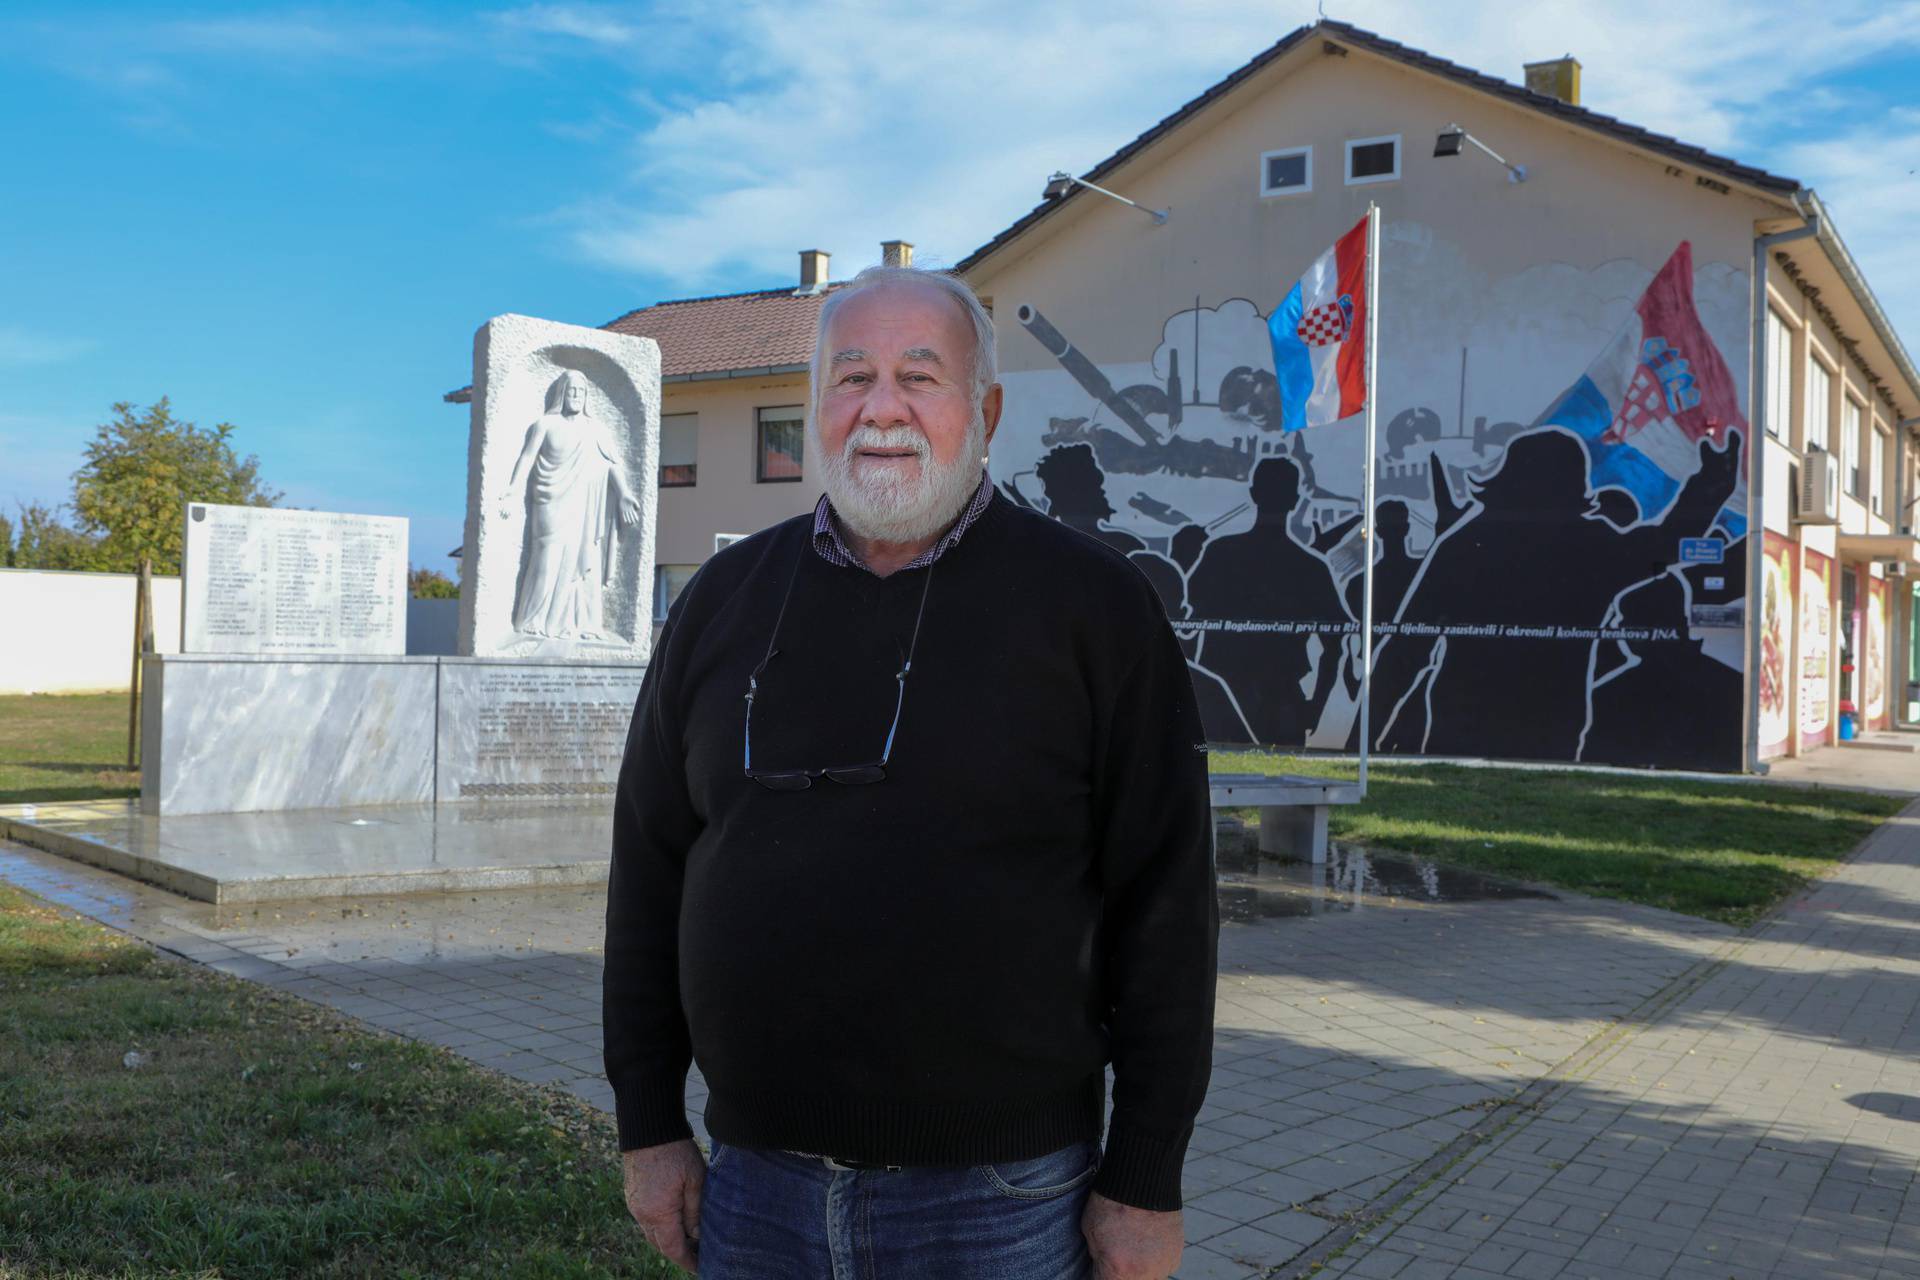 Tragediju Vukovara izrezbario u hrastu: 'Želim da se zna što smo sve proživjeli, ovime pomažem'